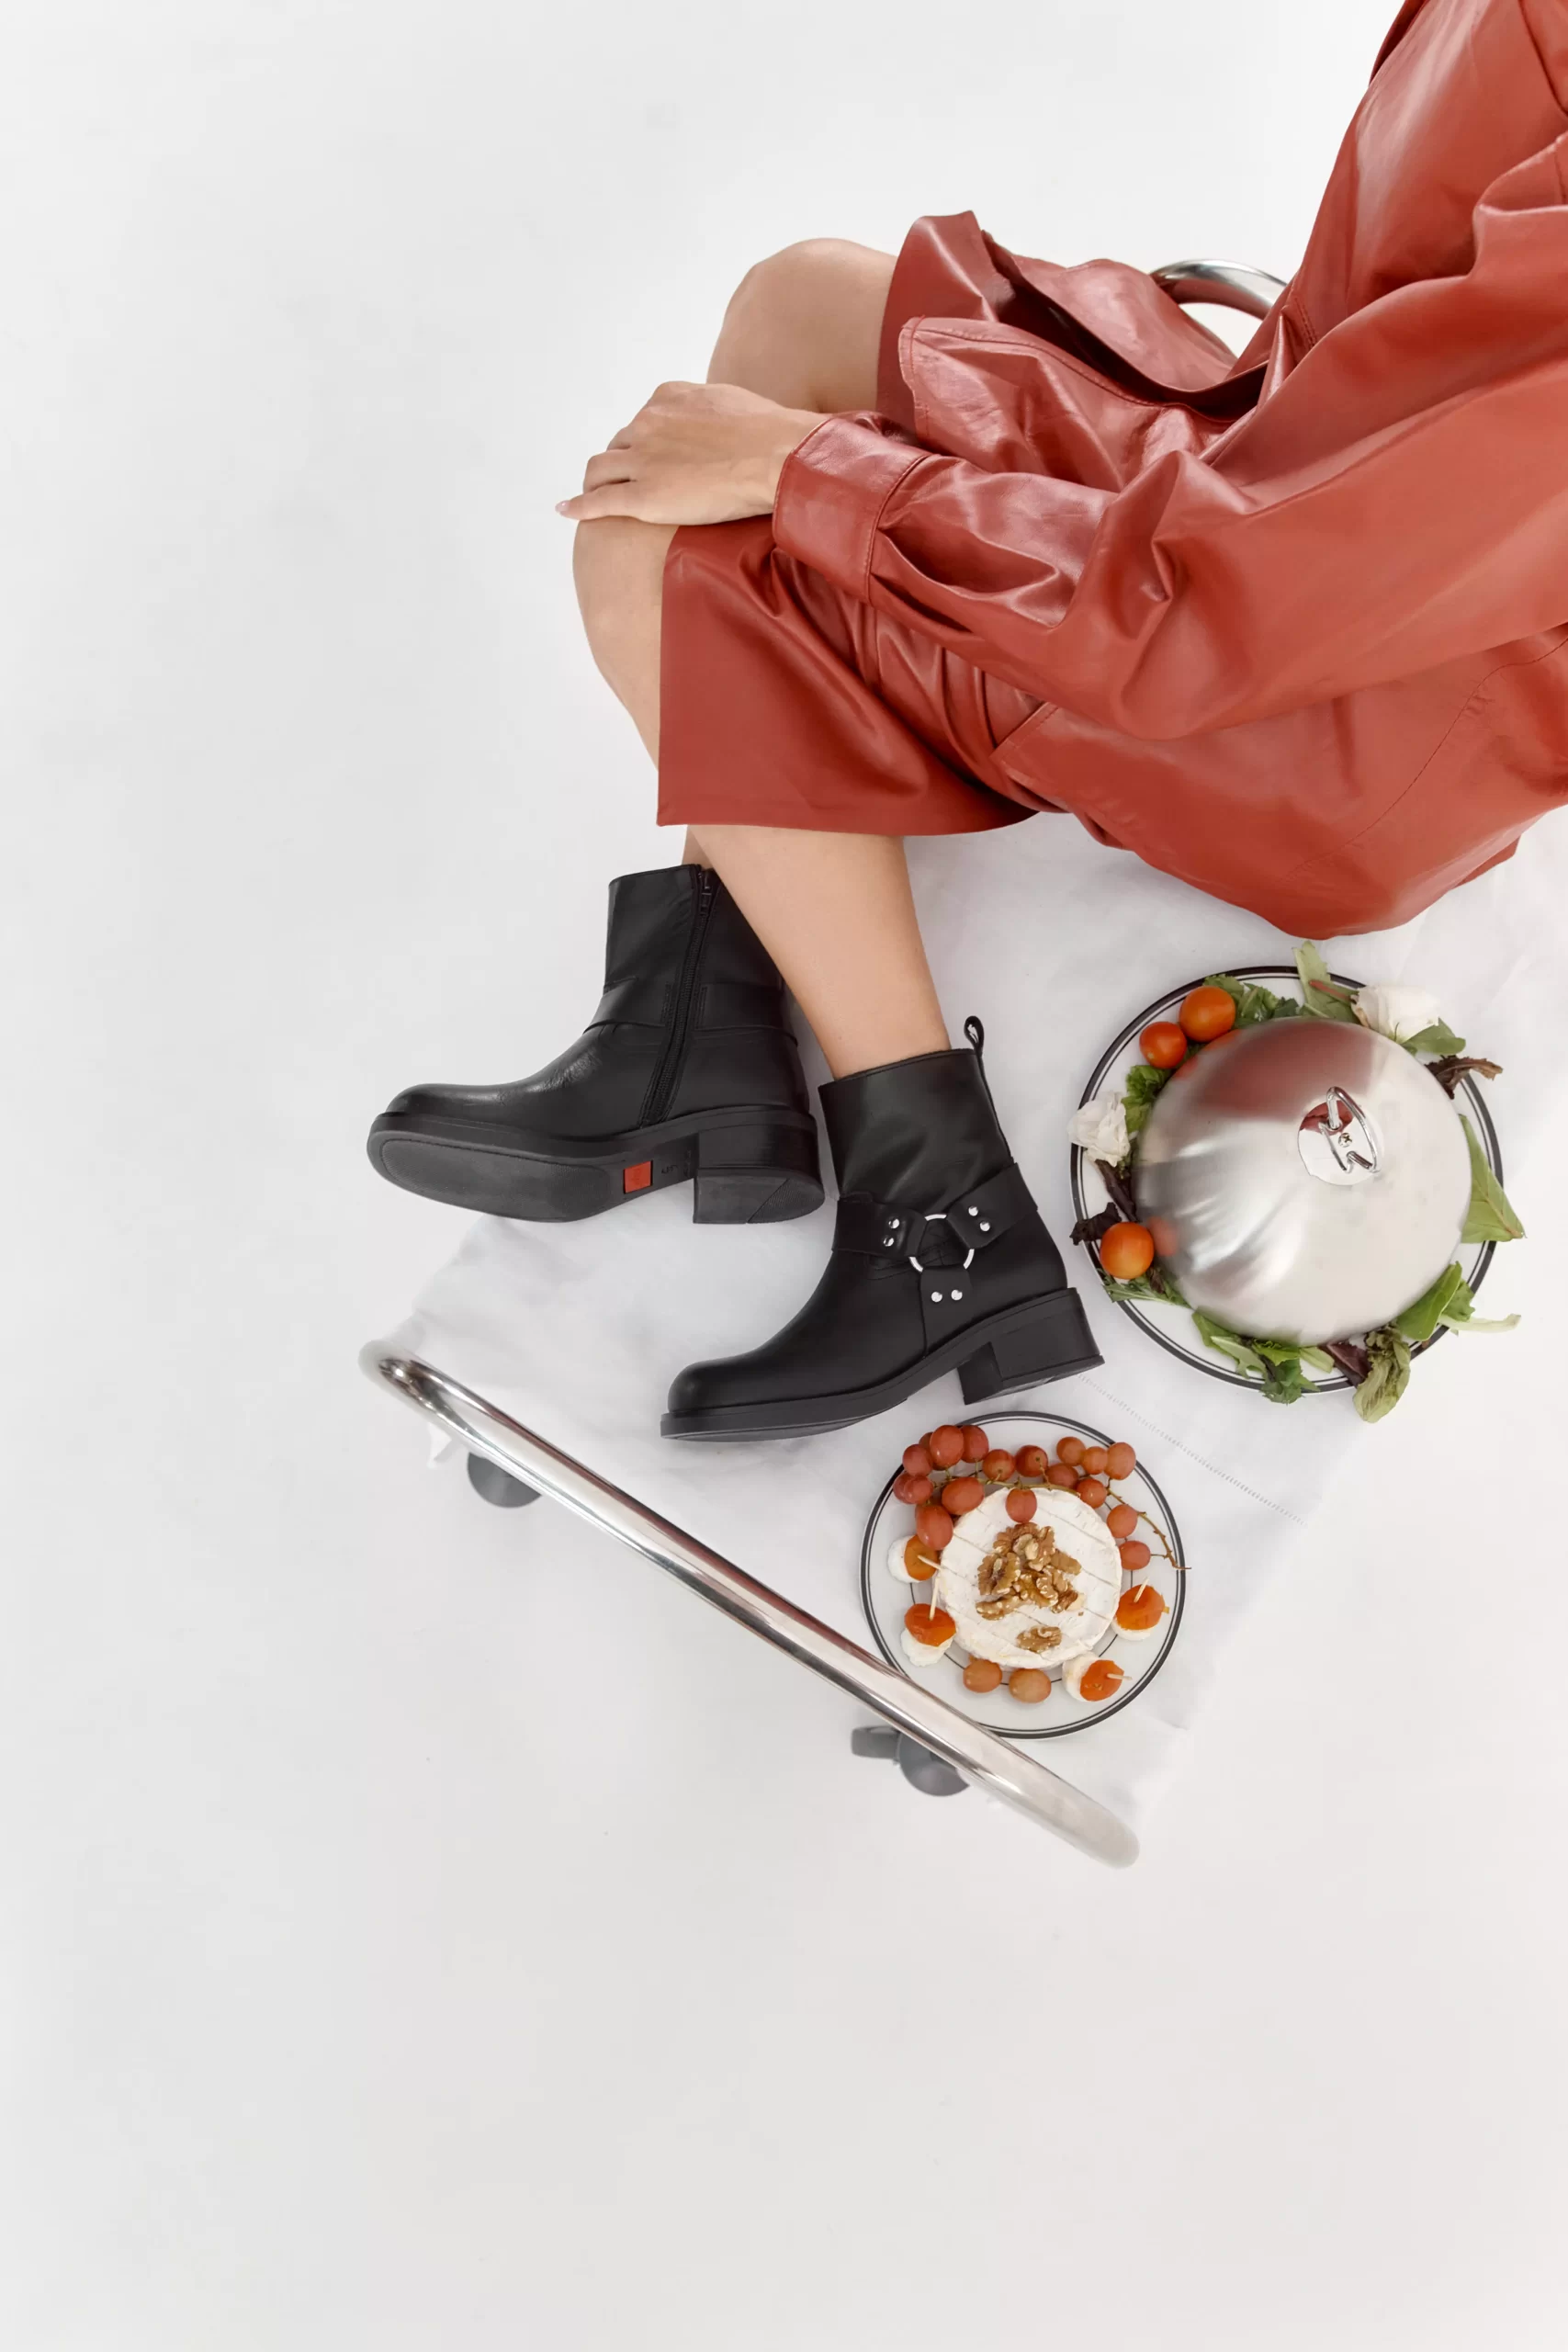 Campaña Publicidad de Calzado, Moda YOKONO - Contenido audiovisual para la marca